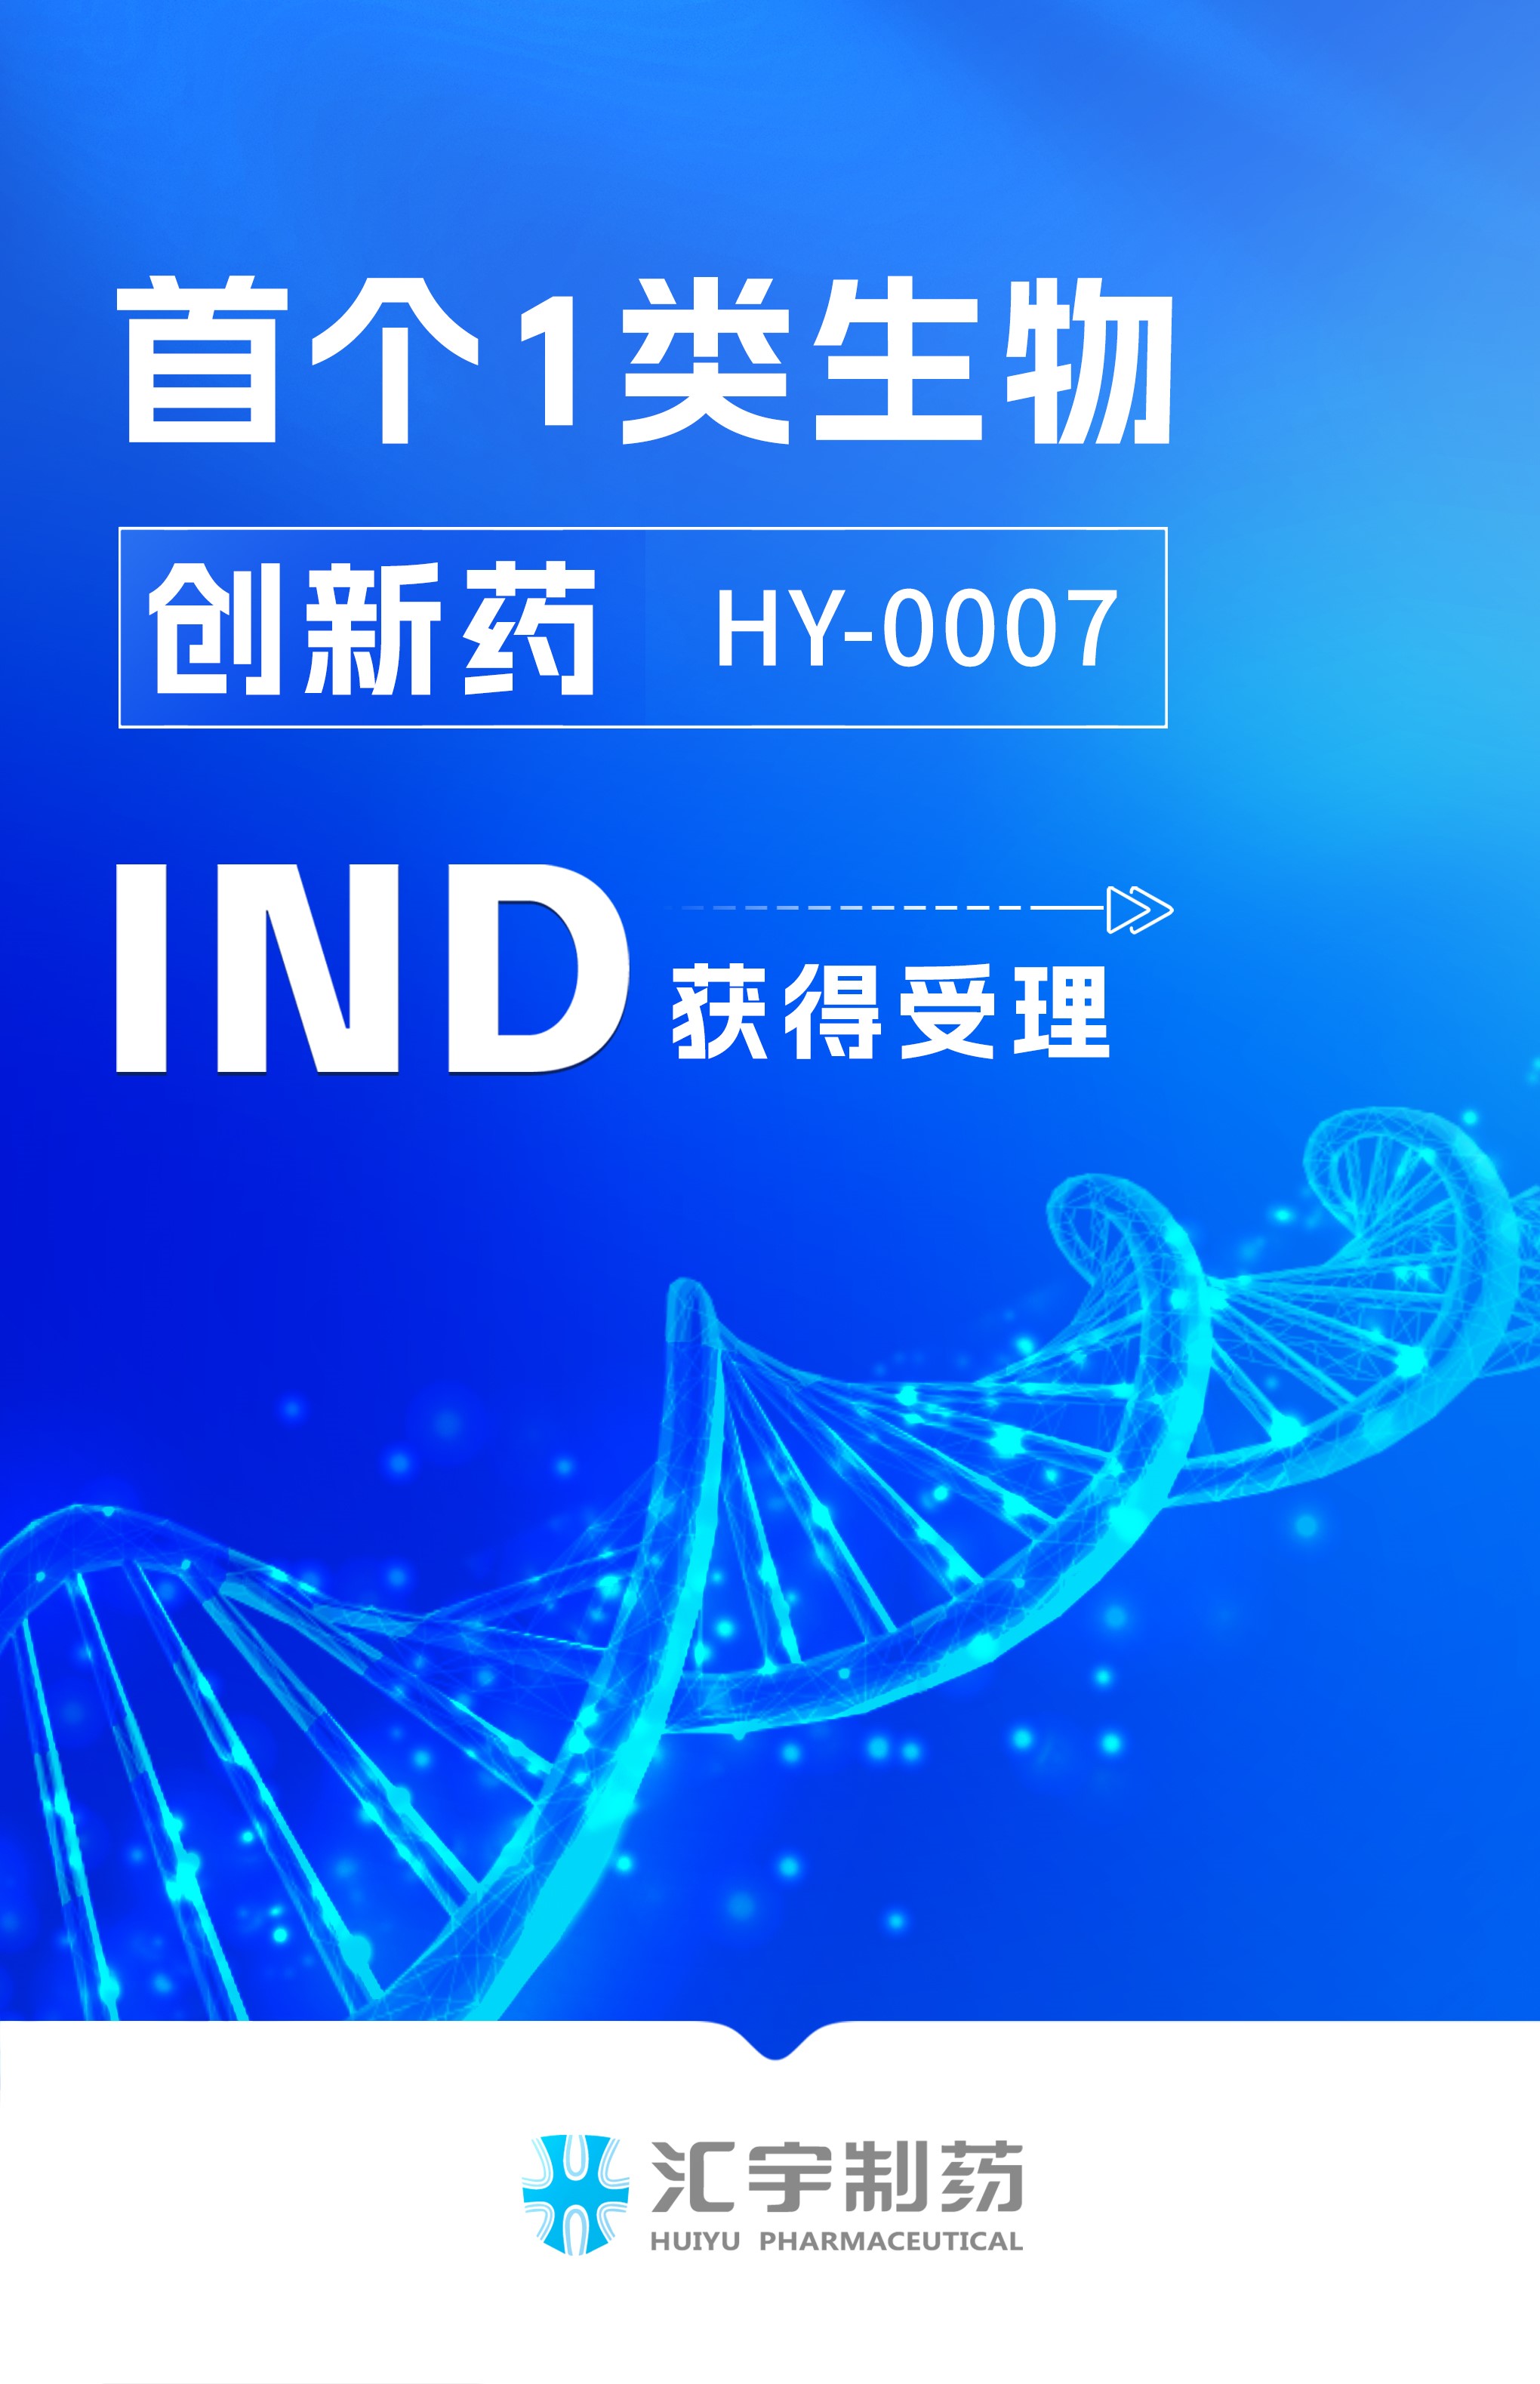 汇宇制药首个1类生物创新药HY-0007项目临床试验申请获得受理